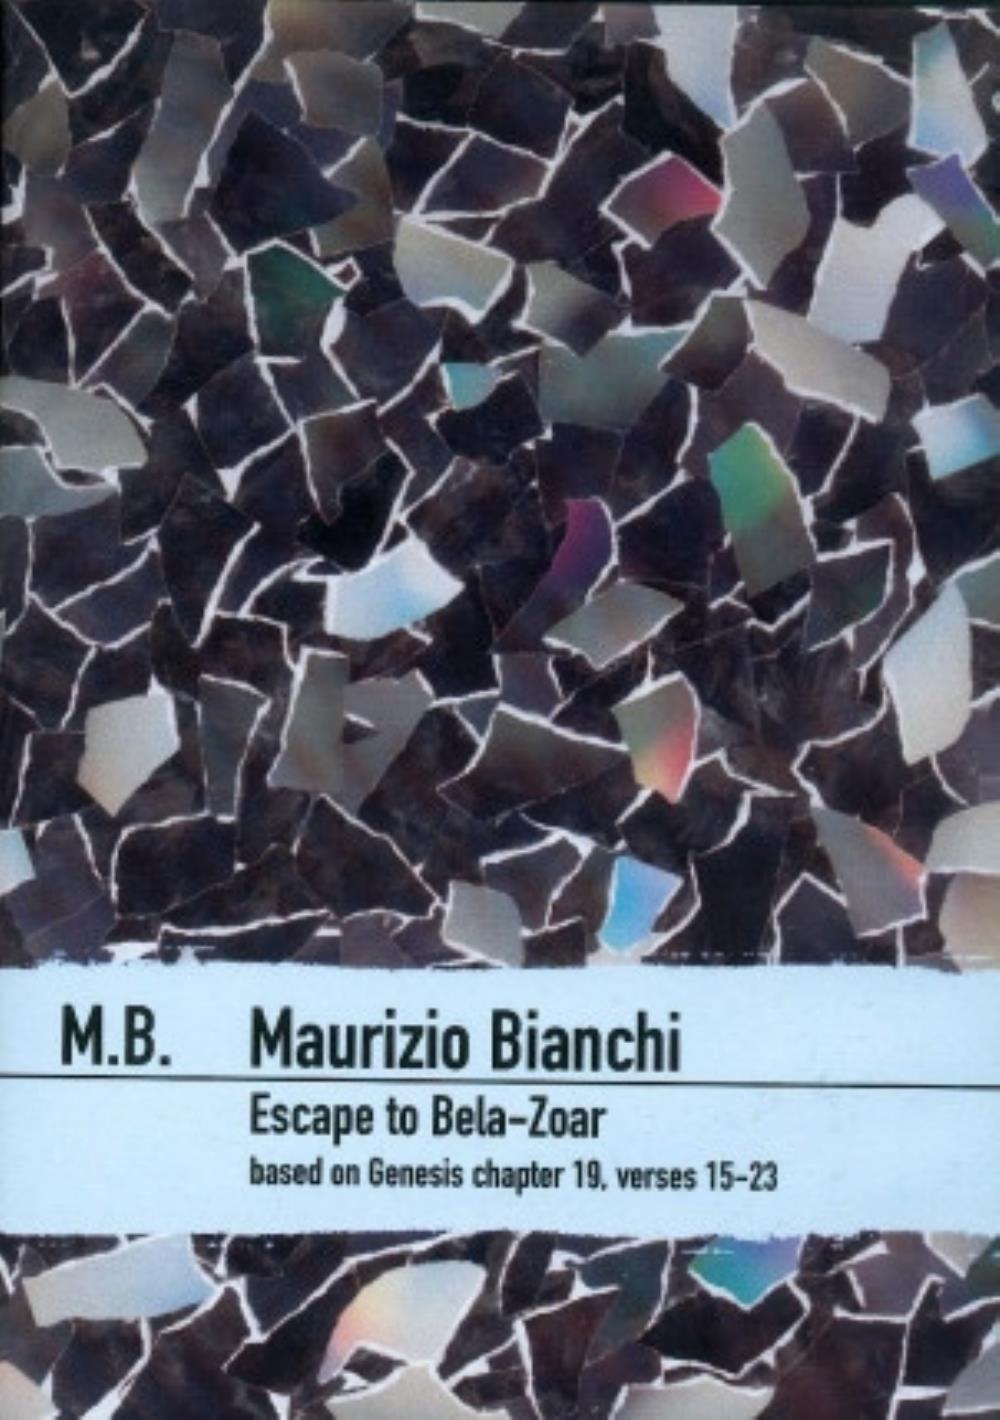 Maurizio Bianchi Escape to Bela-Zoar album cover